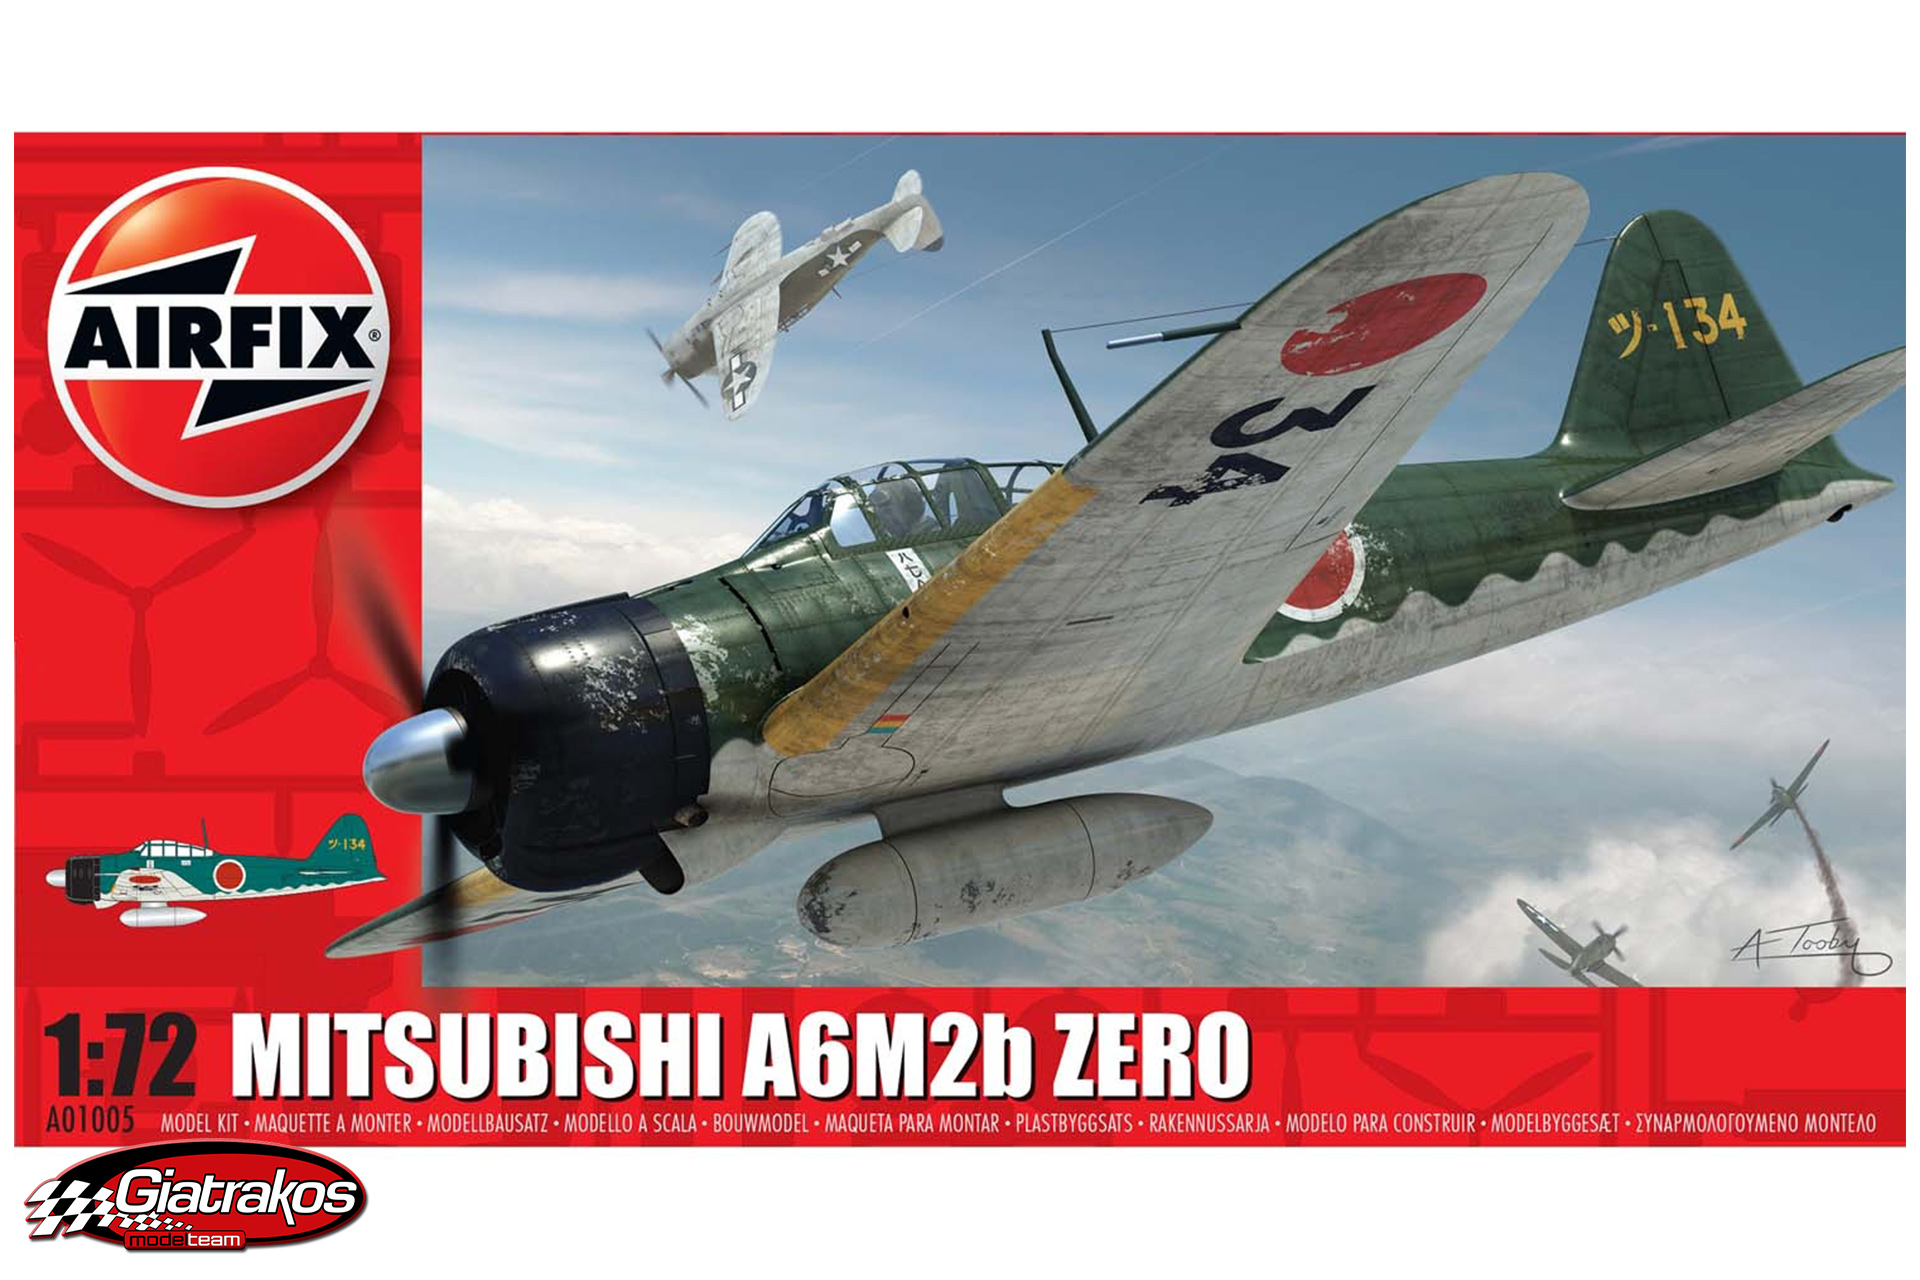 Mitsubishi Zero A6M2b (01005)